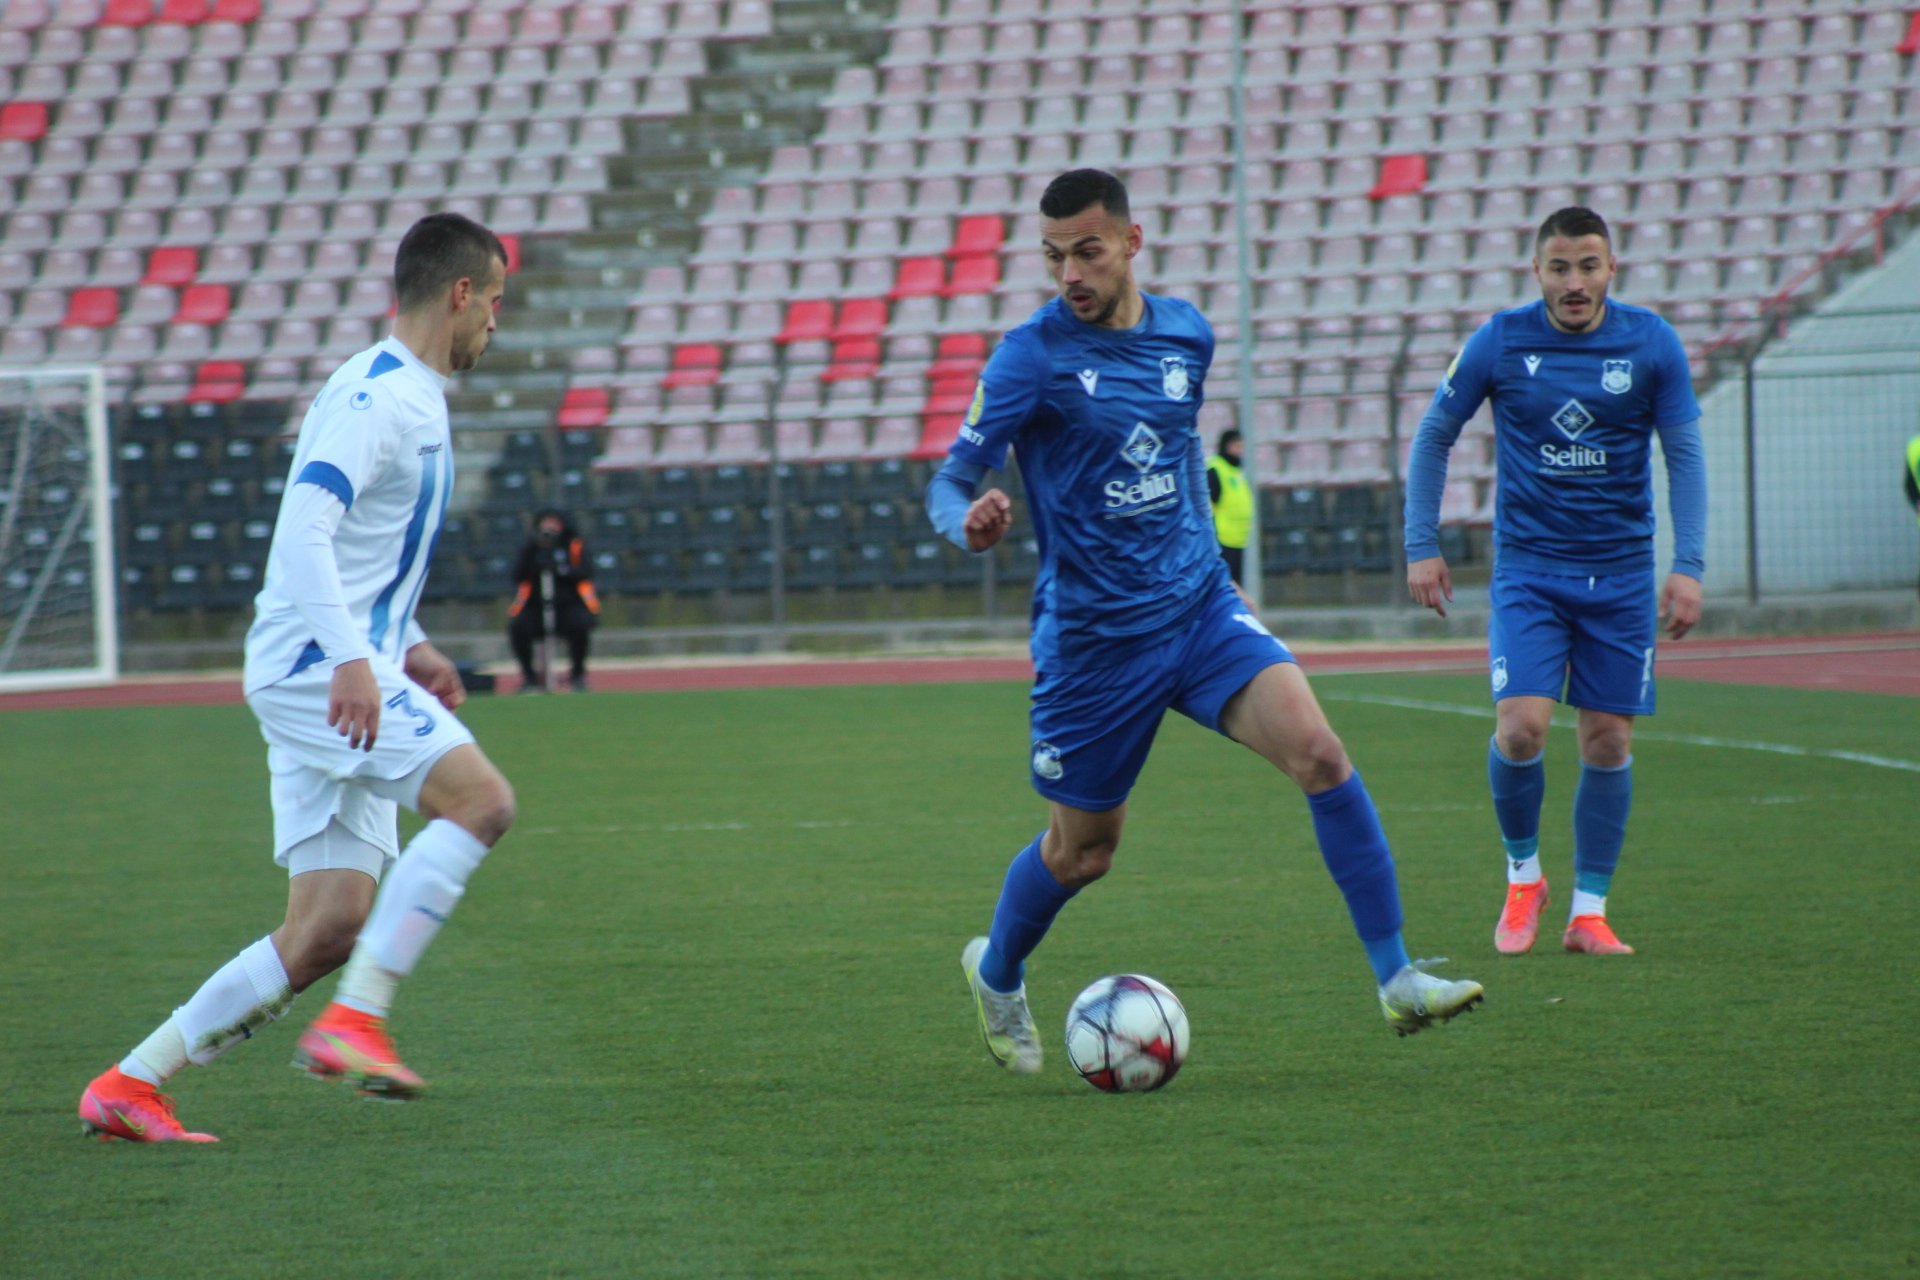 KF Teuta Fans - 🚨 Zyrtare : KF Teuta🆚 KF Tirana E Premte